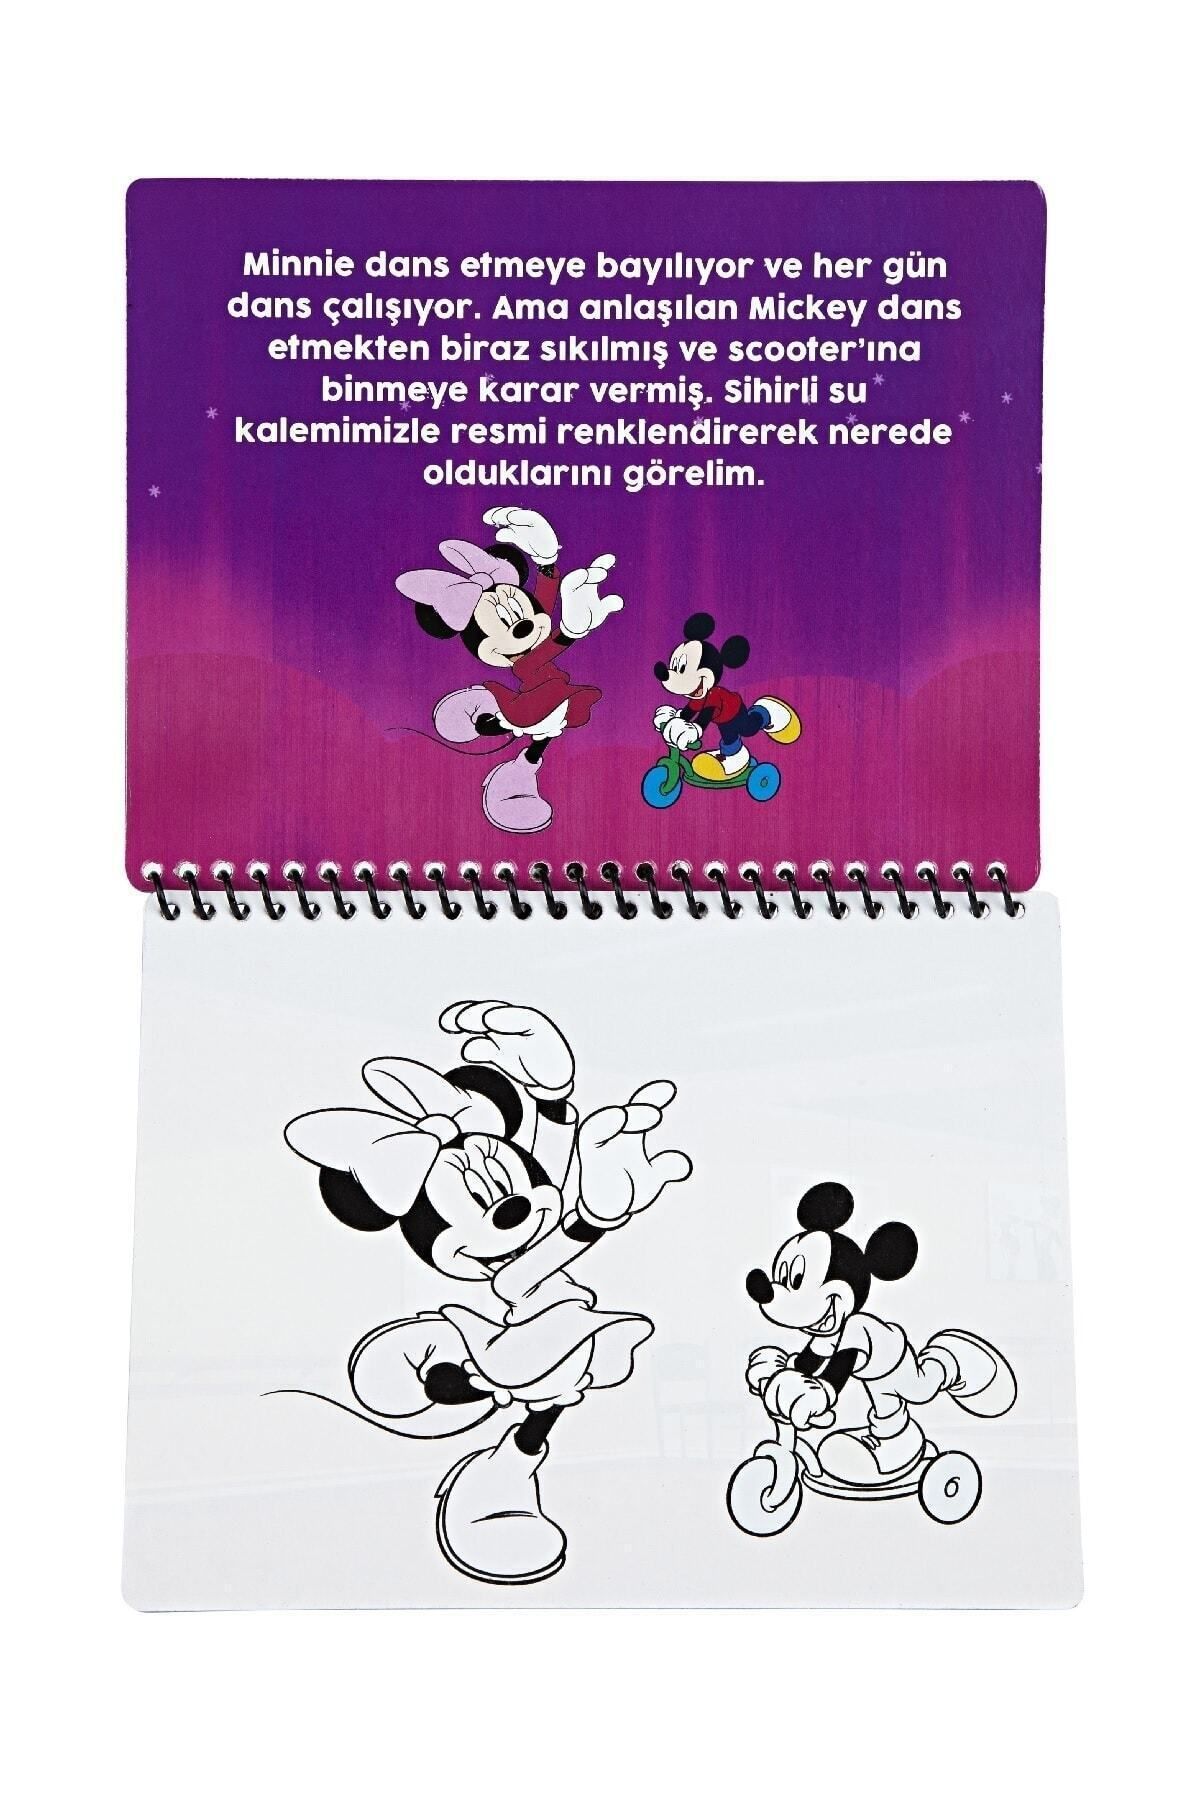 Disney Jr. Minnie Lisanslı Sihirli Boyama Kitabı Özel Sulu Kalem Ile Water Painting